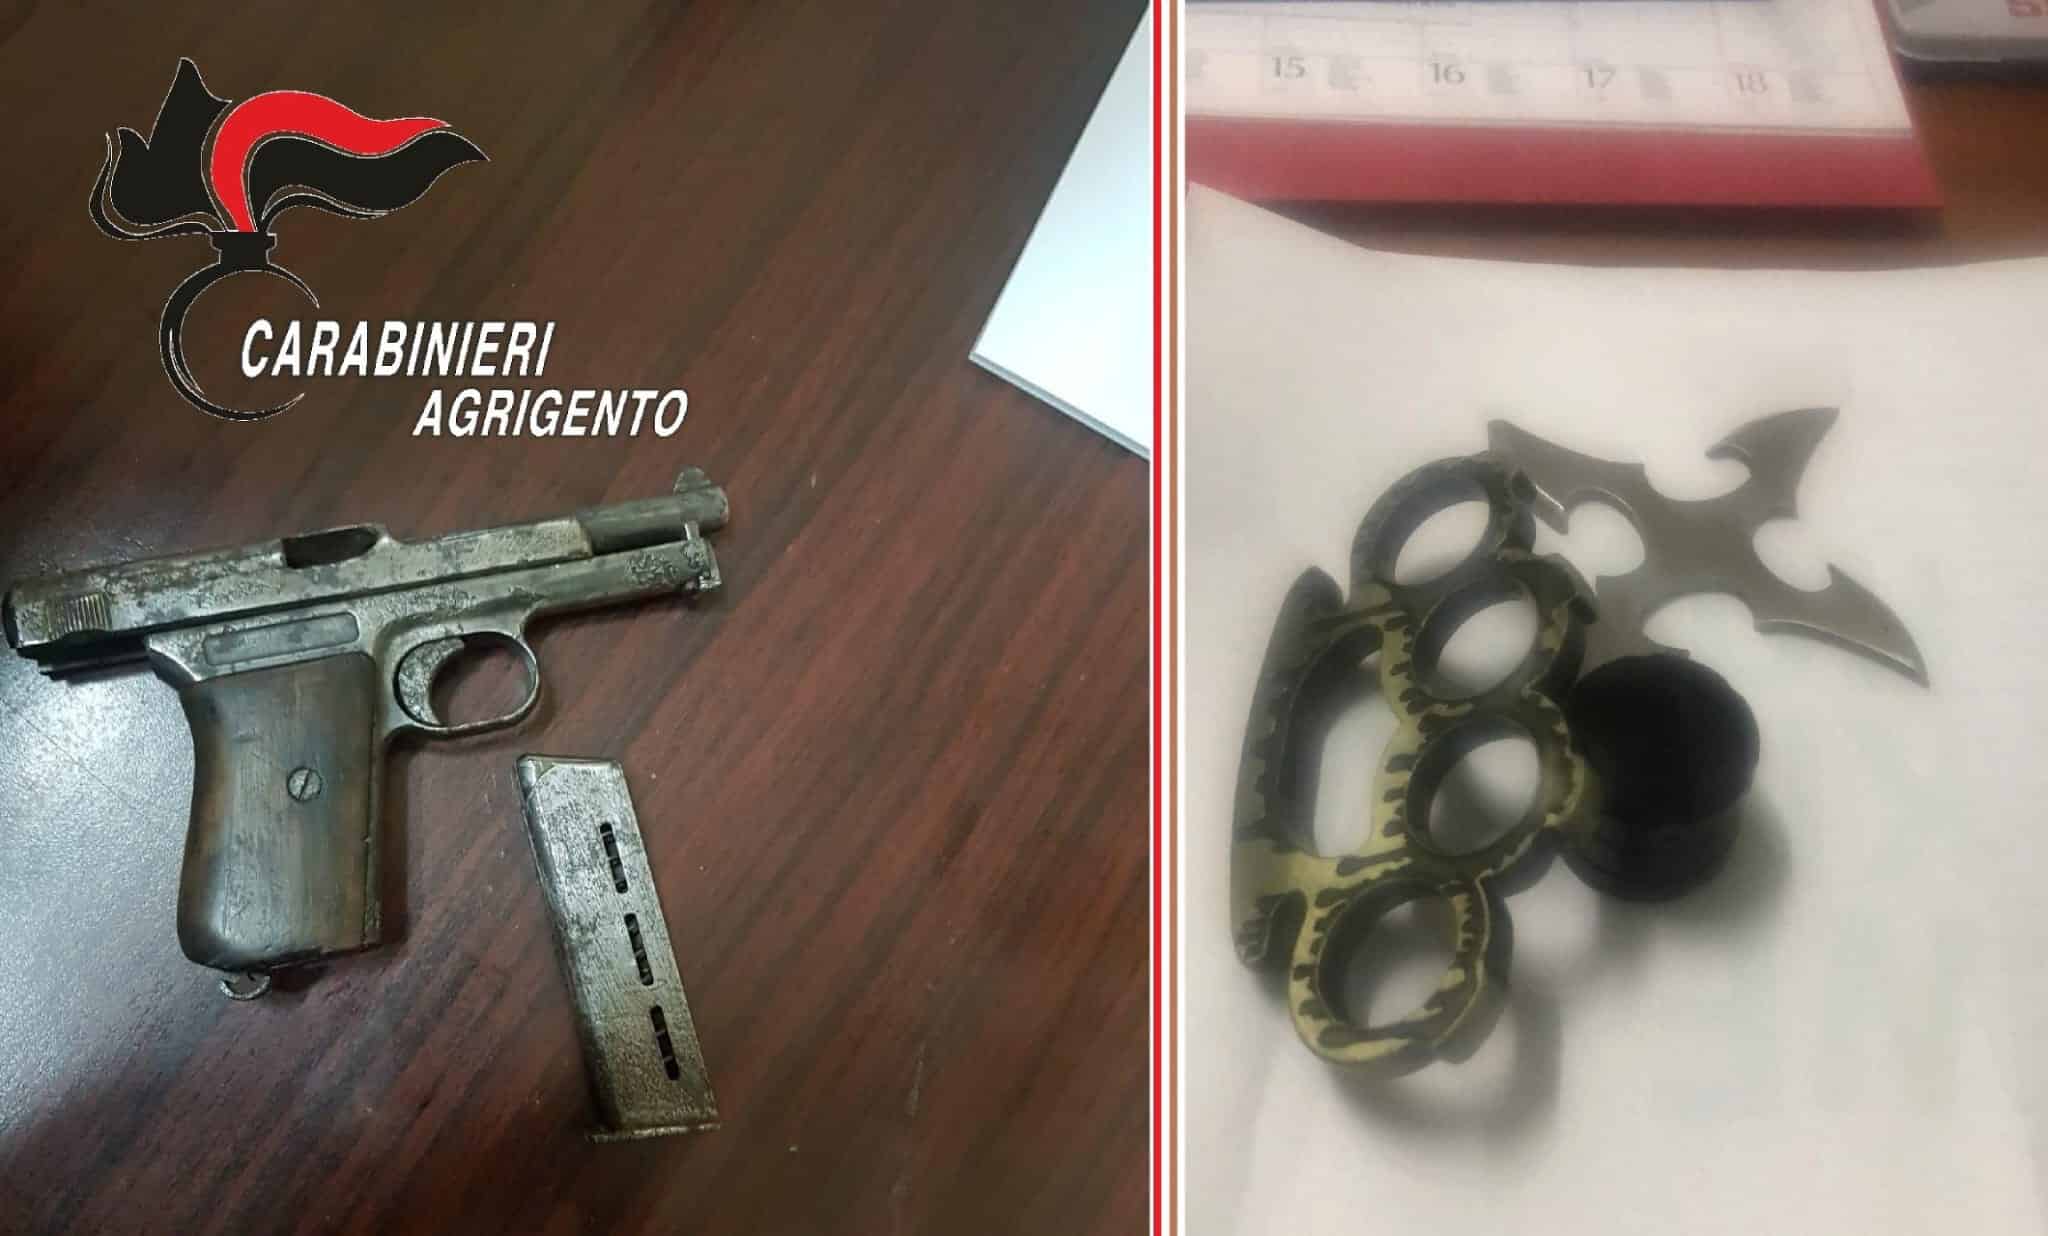 Porto di arma clandestina e ricettazione, arrestato un minorenne